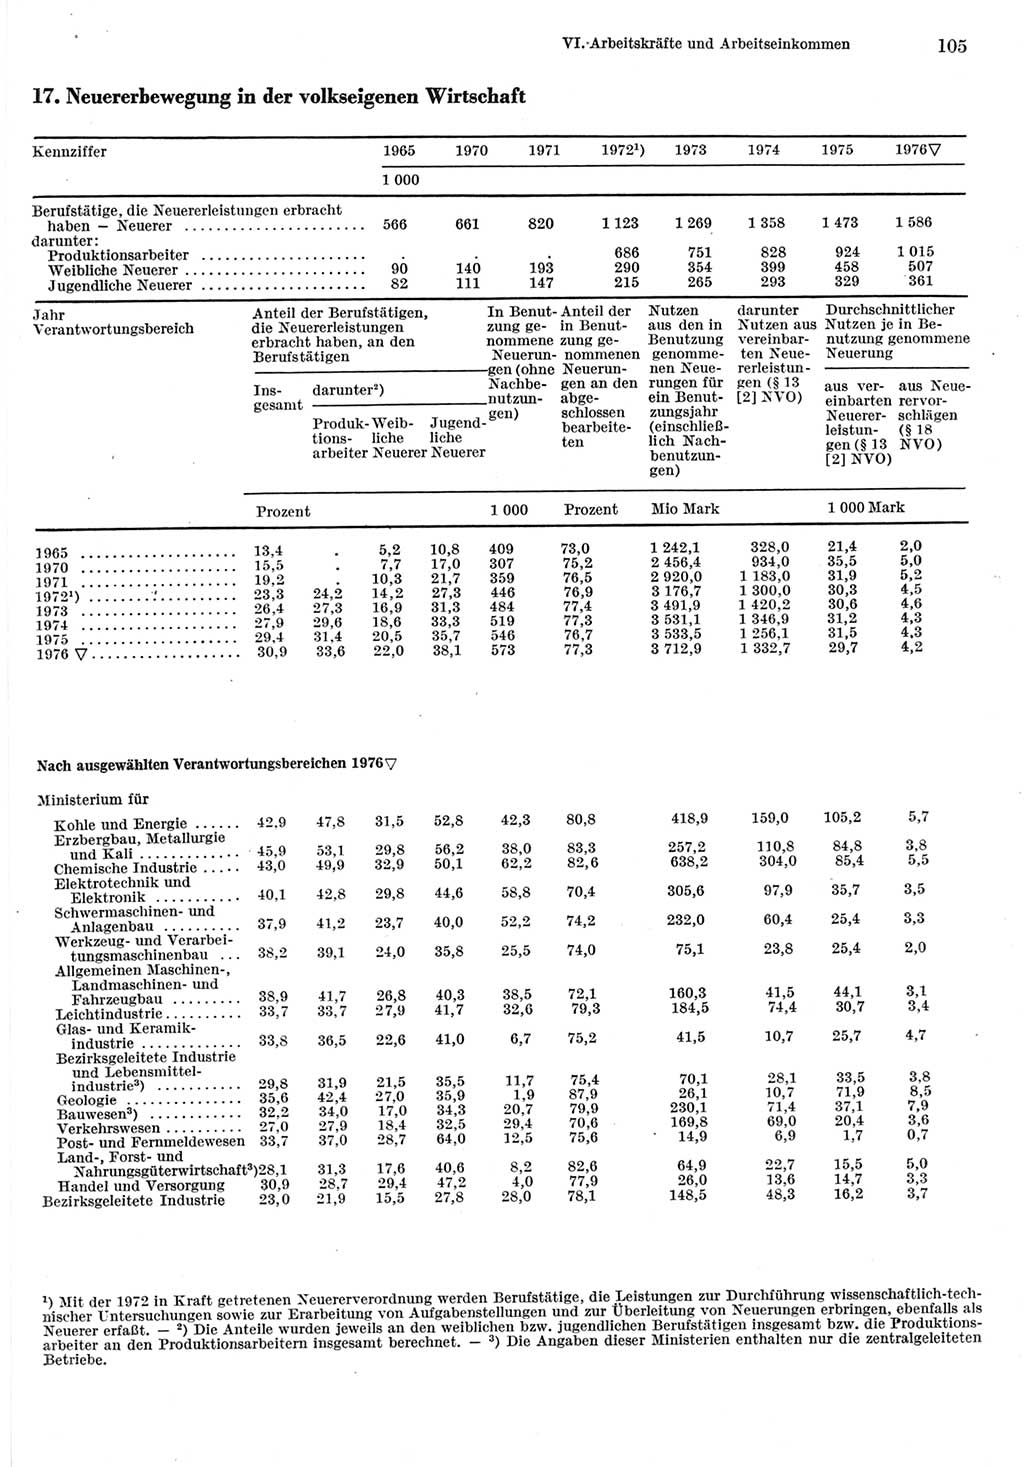 Statistisches Jahrbuch der Deutschen Demokratischen Republik (DDR) 1977, Seite 105 (Stat. Jb. DDR 1977, S. 105)